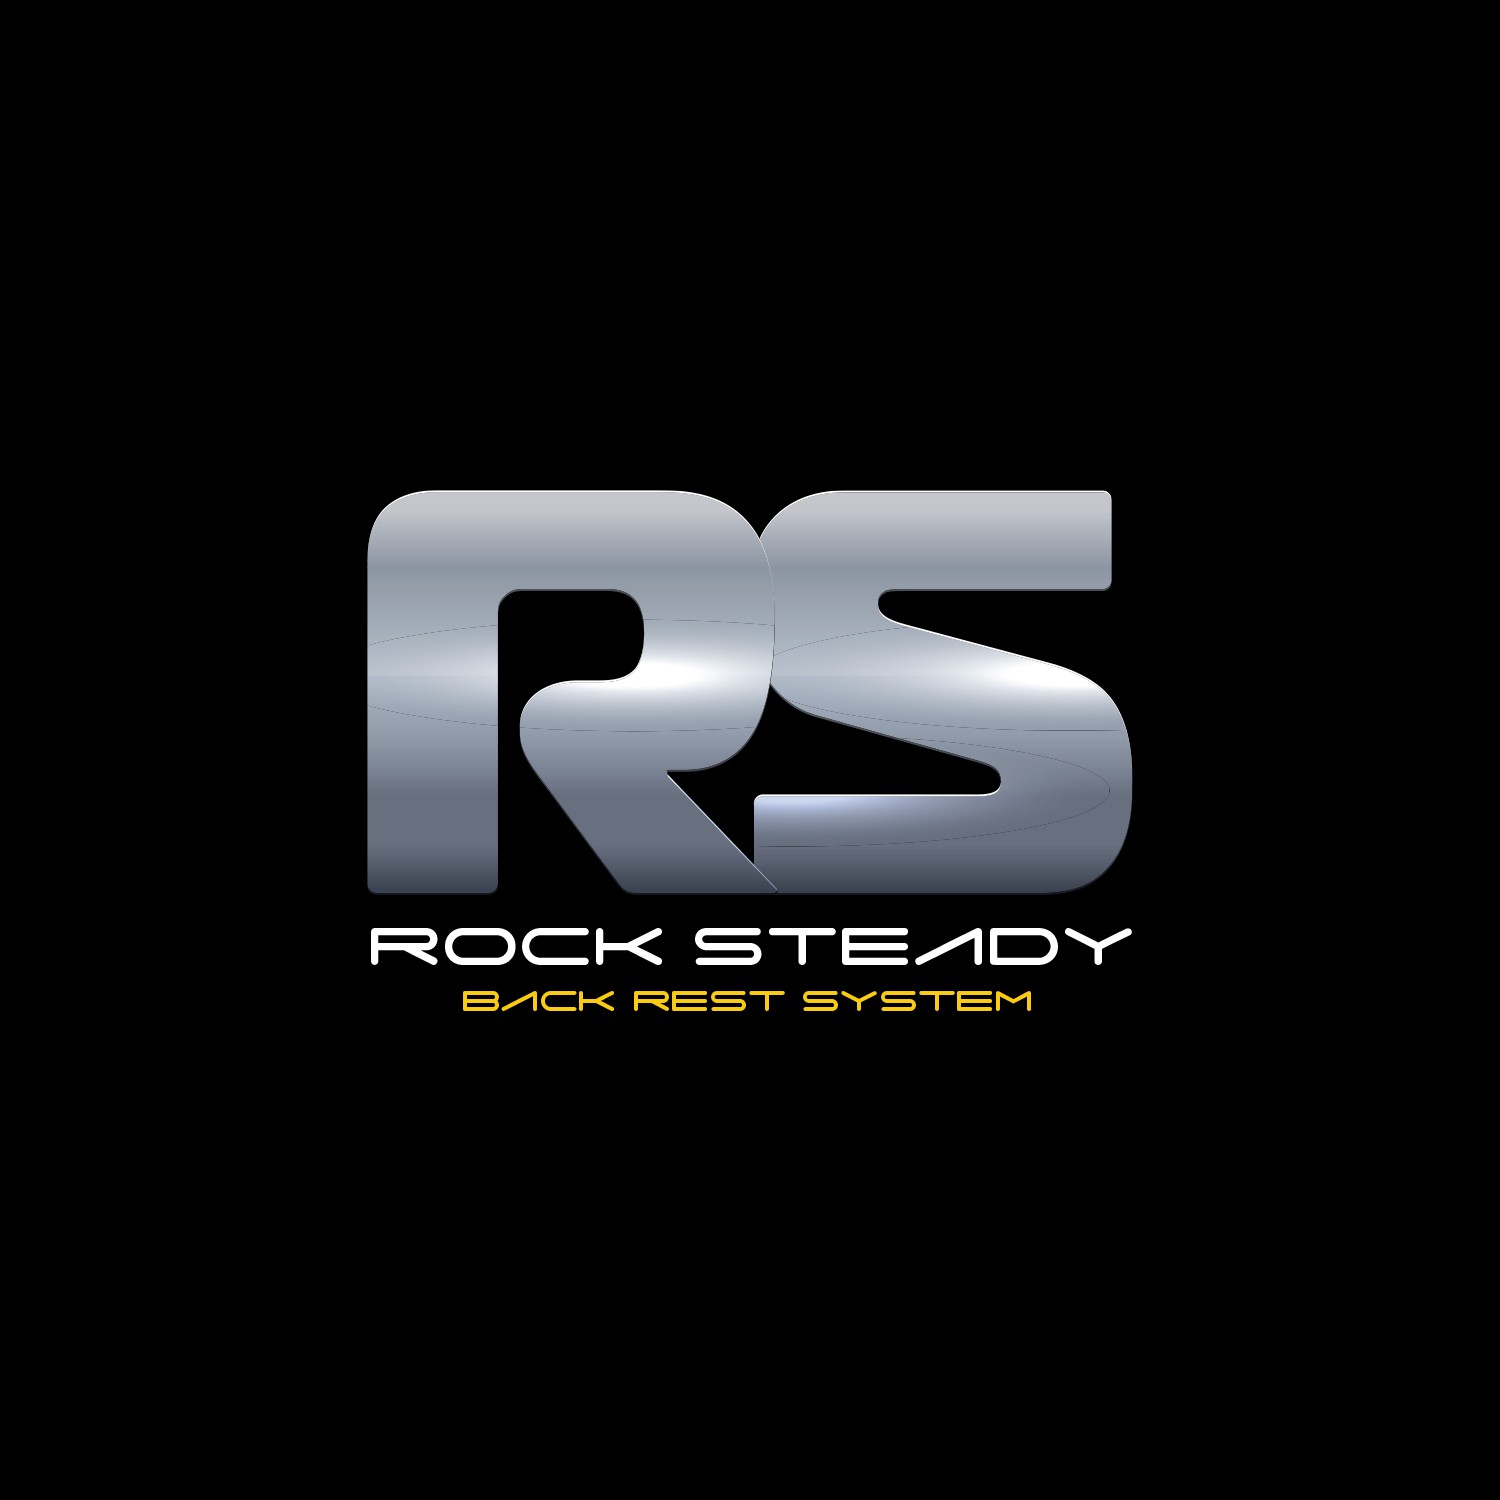 ROCK STEADY BACK REST SYSTEM V1